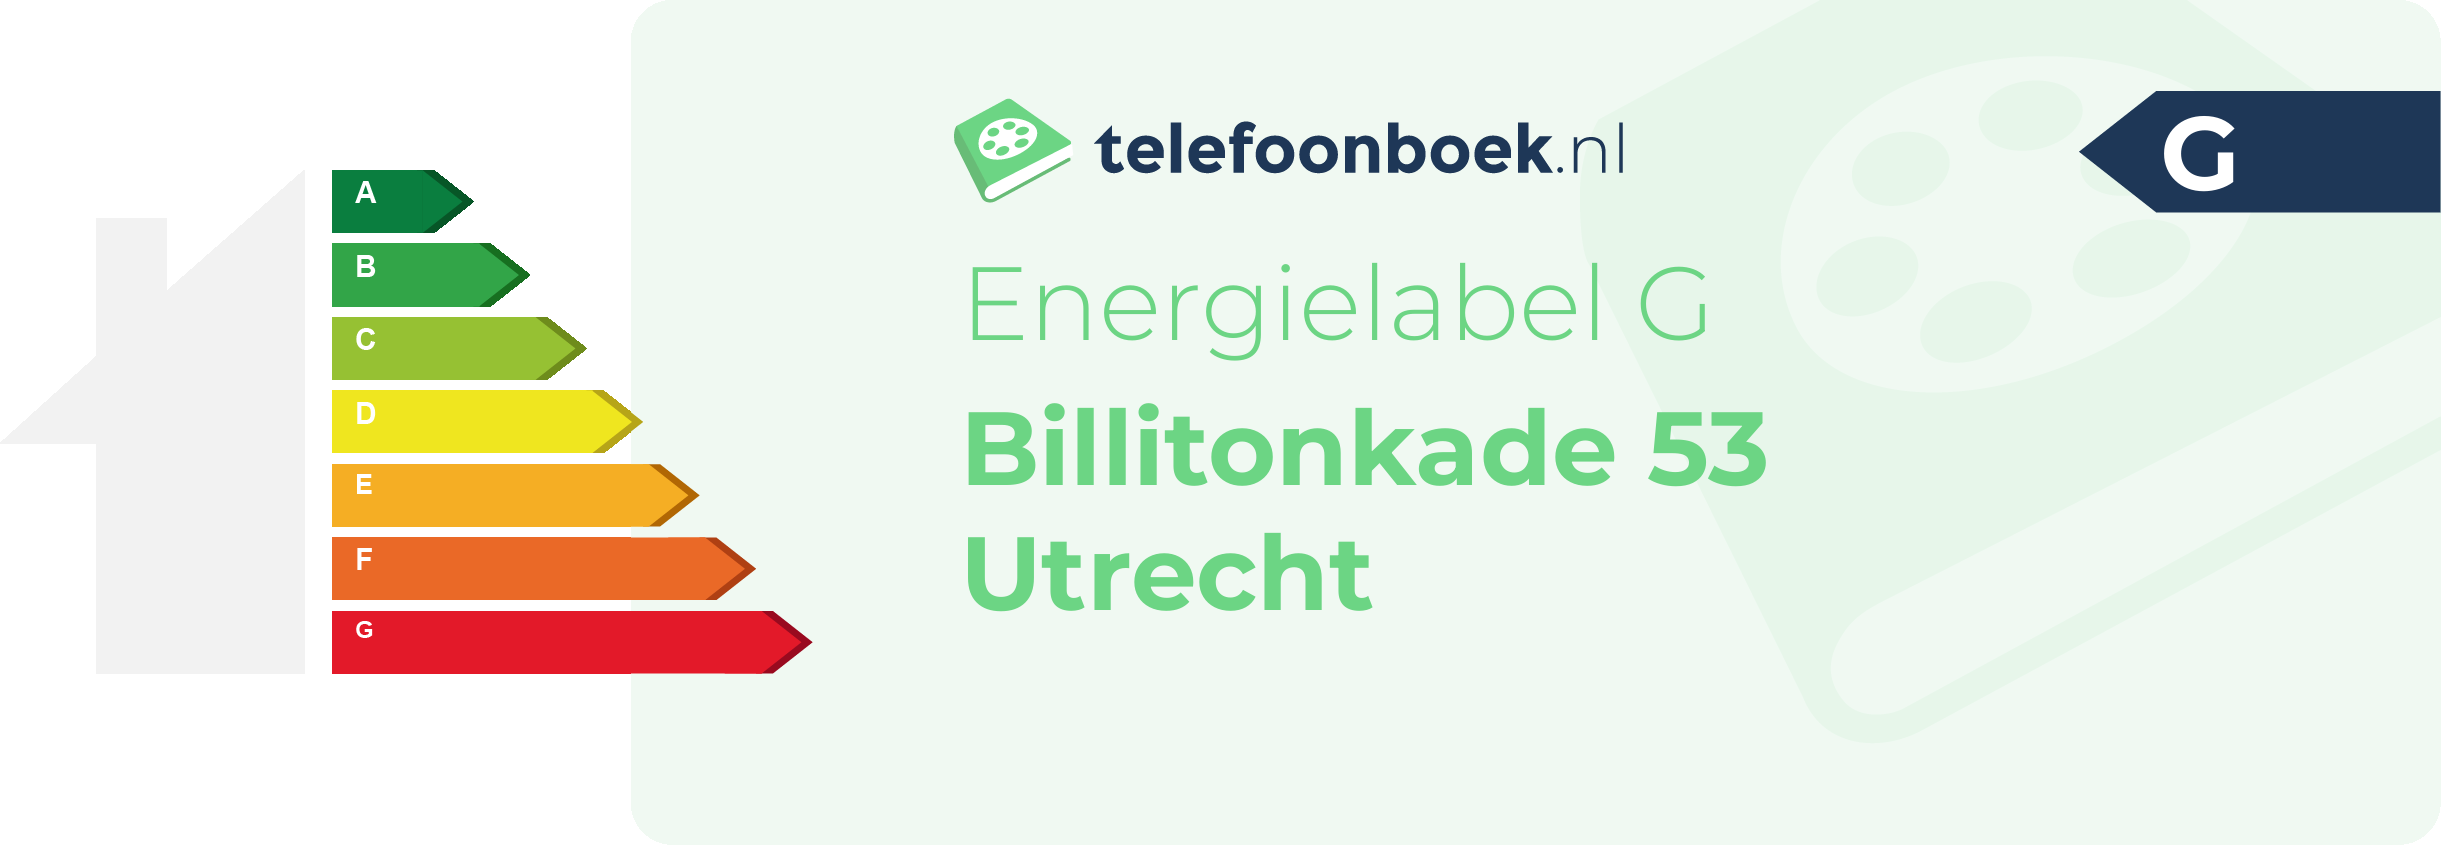 Energielabel Billitonkade 53 Utrecht